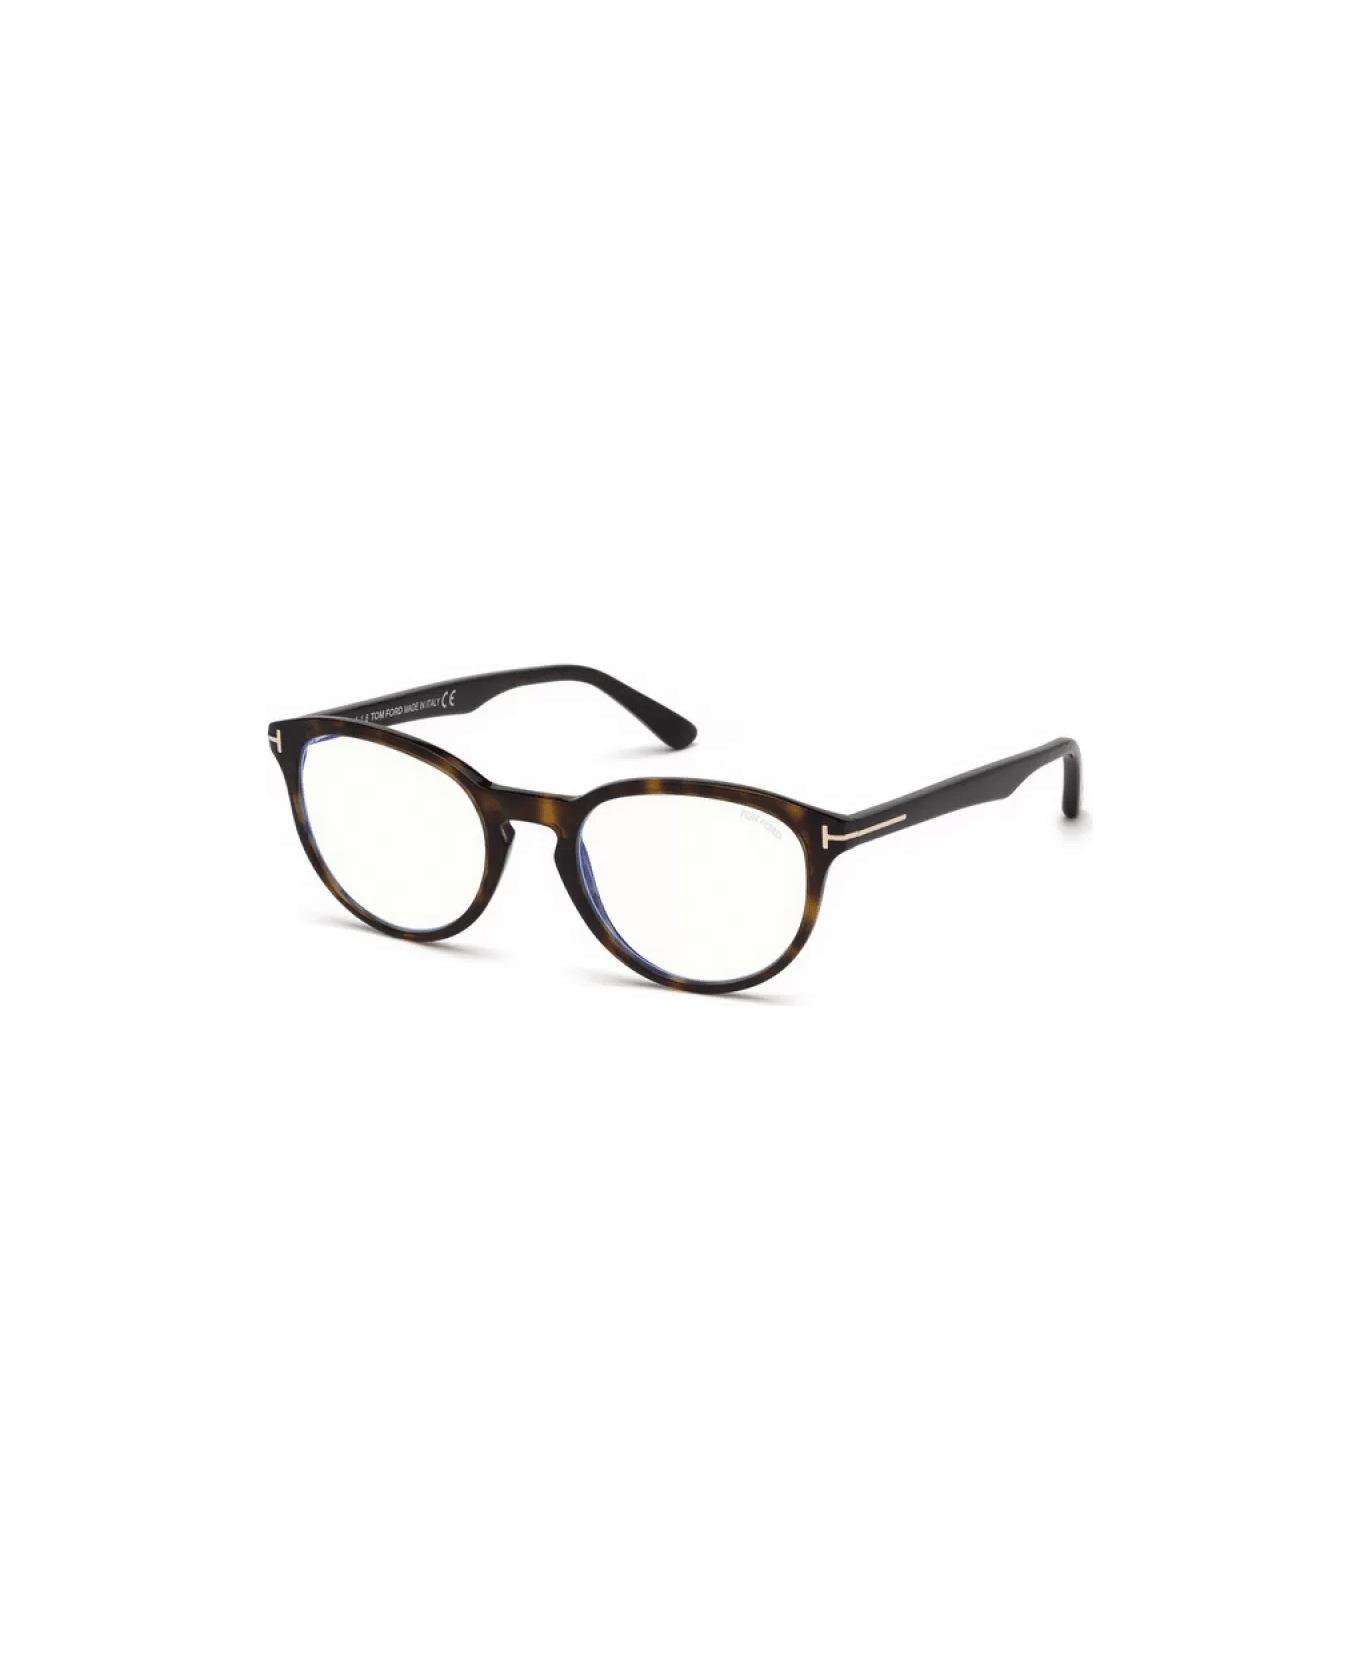 Tom Ford Eyewear FT5556 052 Glasses